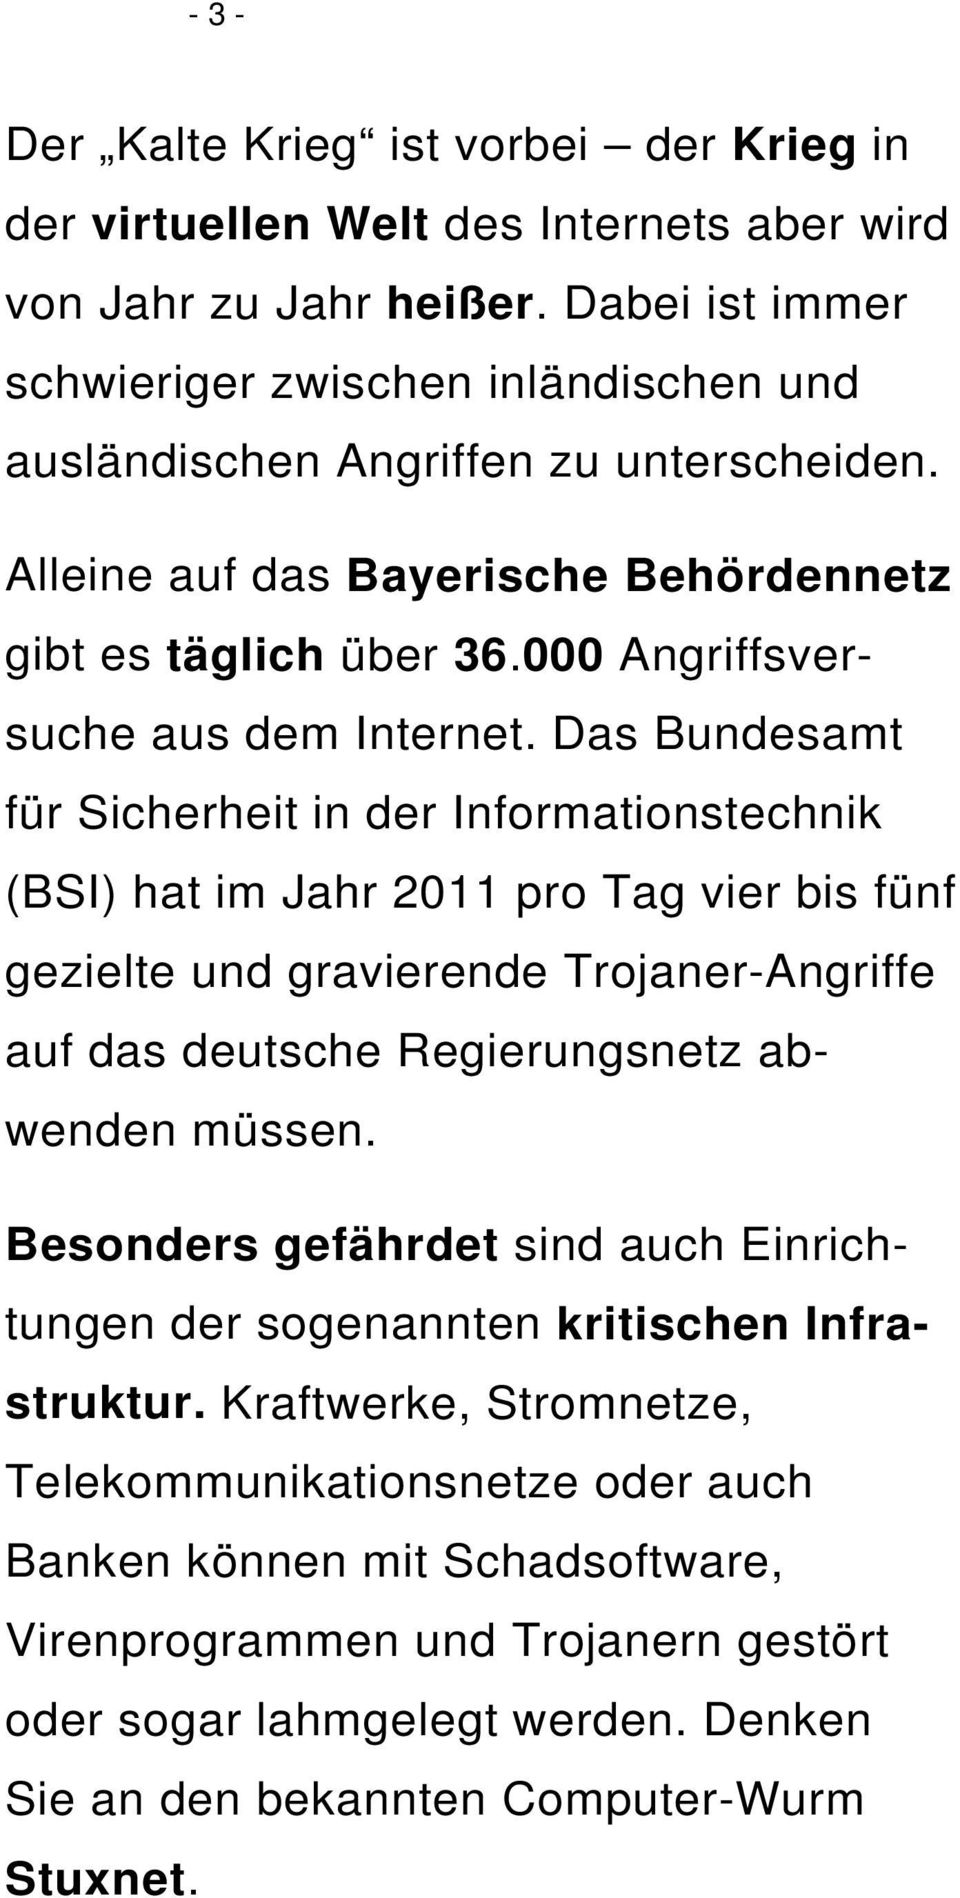 Das Bundesamt für Sicherheit in der Informationstechnik (BSI) hat im Jahr 2011 pro Tag vier bis fünf gezielte und gravierende Trojaner-Angriffe auf das deutsche Regierungsnetz abwenden müssen.